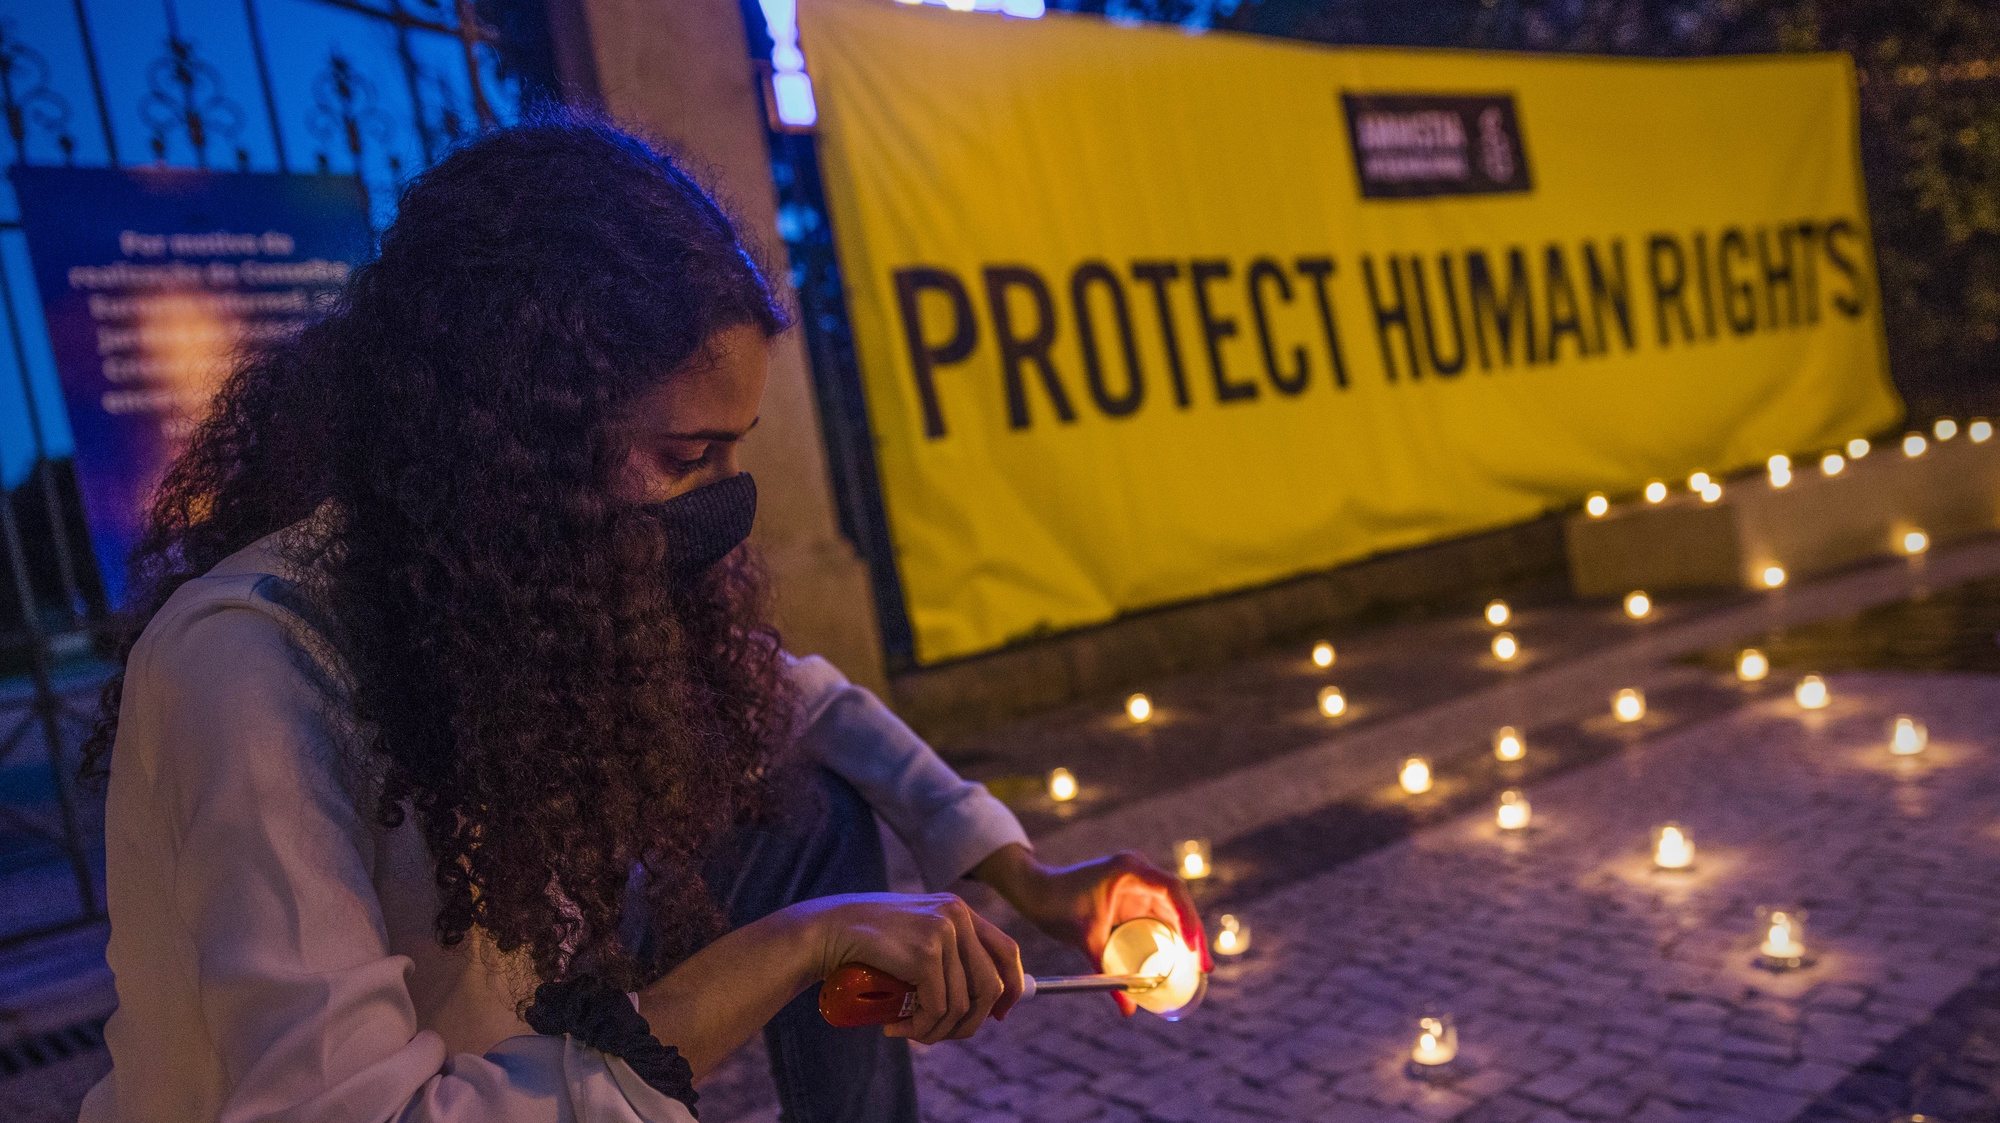 Vigília pela proteção dos direitos humanos na Índia, Porto, 6 de maio de 2021. A Amnistia Internacional promove uma vigília para &quot;pressionar o governo indiano a terminar com a repressão às pessoas que defendem os direitos humanos, bem como a todos os dissidentes de opinião naquele país.&quot;. JOSÉ COELHO/LUSA